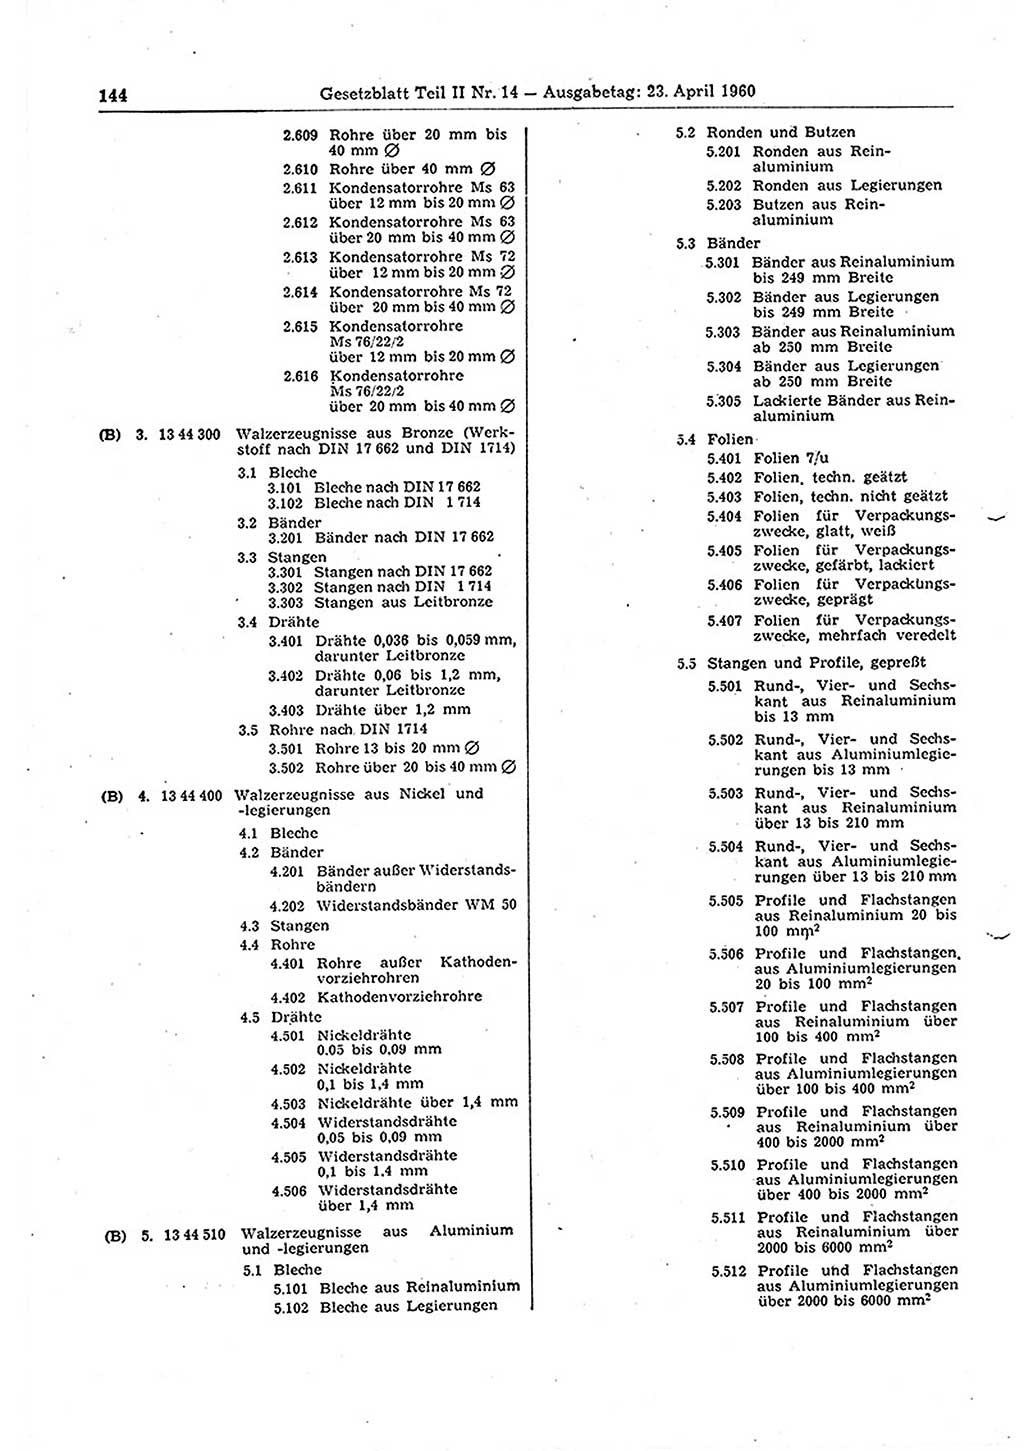 Gesetzblatt (GBl.) der Deutschen Demokratischen Republik (DDR) Teil ⅠⅠ 1960, Seite 144 (GBl. DDR ⅠⅠ 1960, S. 144)